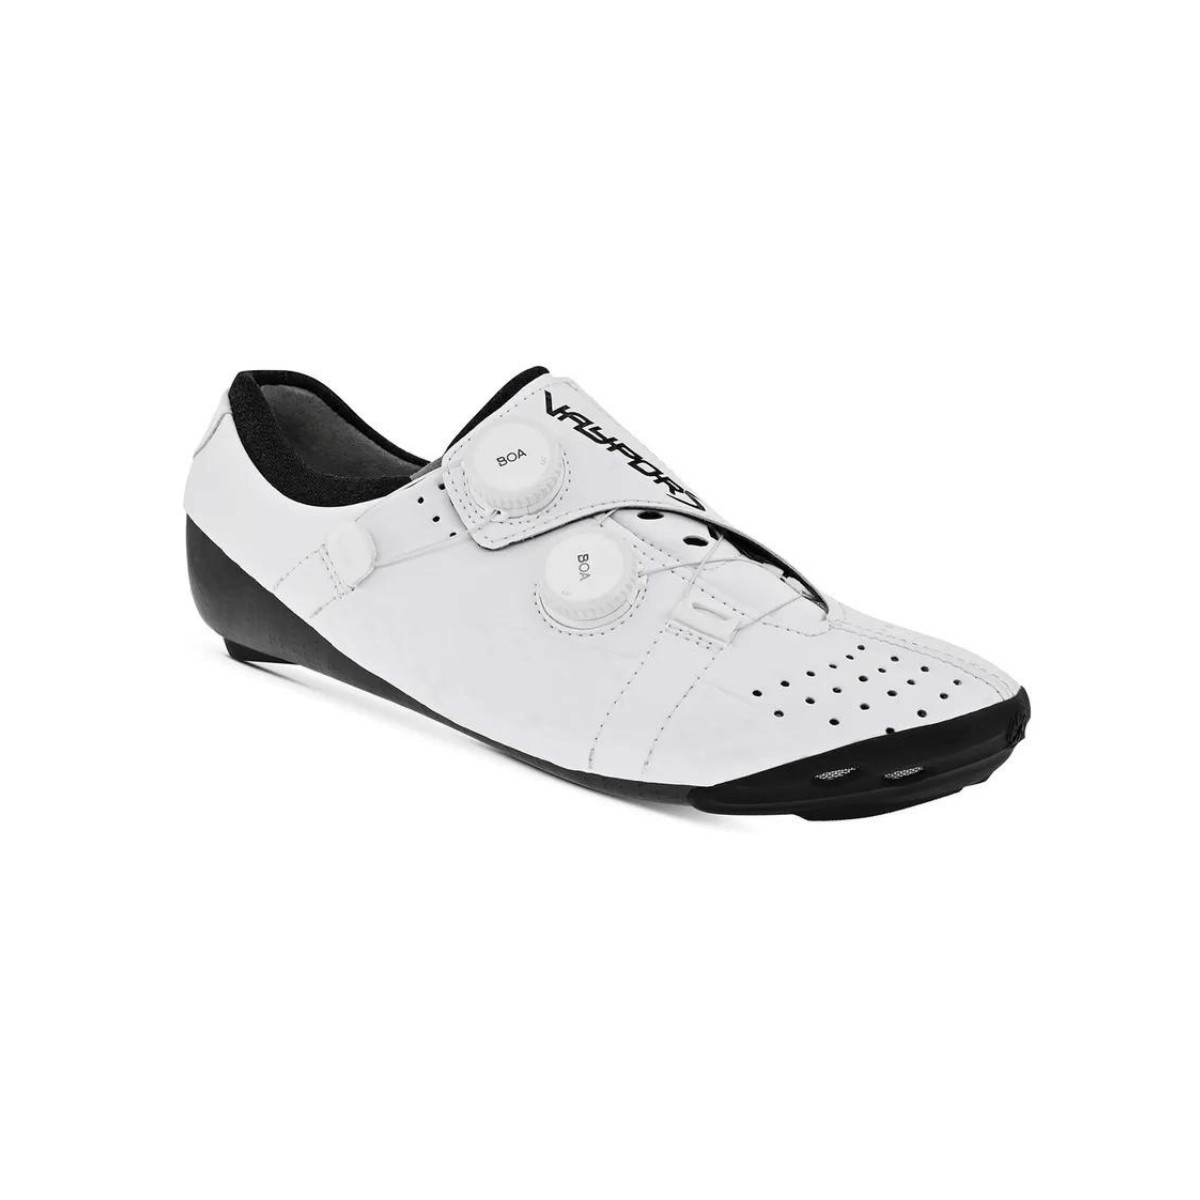 Photos - Cycling Shoes BONT Vaypor S Li2 Shoes White, Size 44 - EUR VSW2-44 